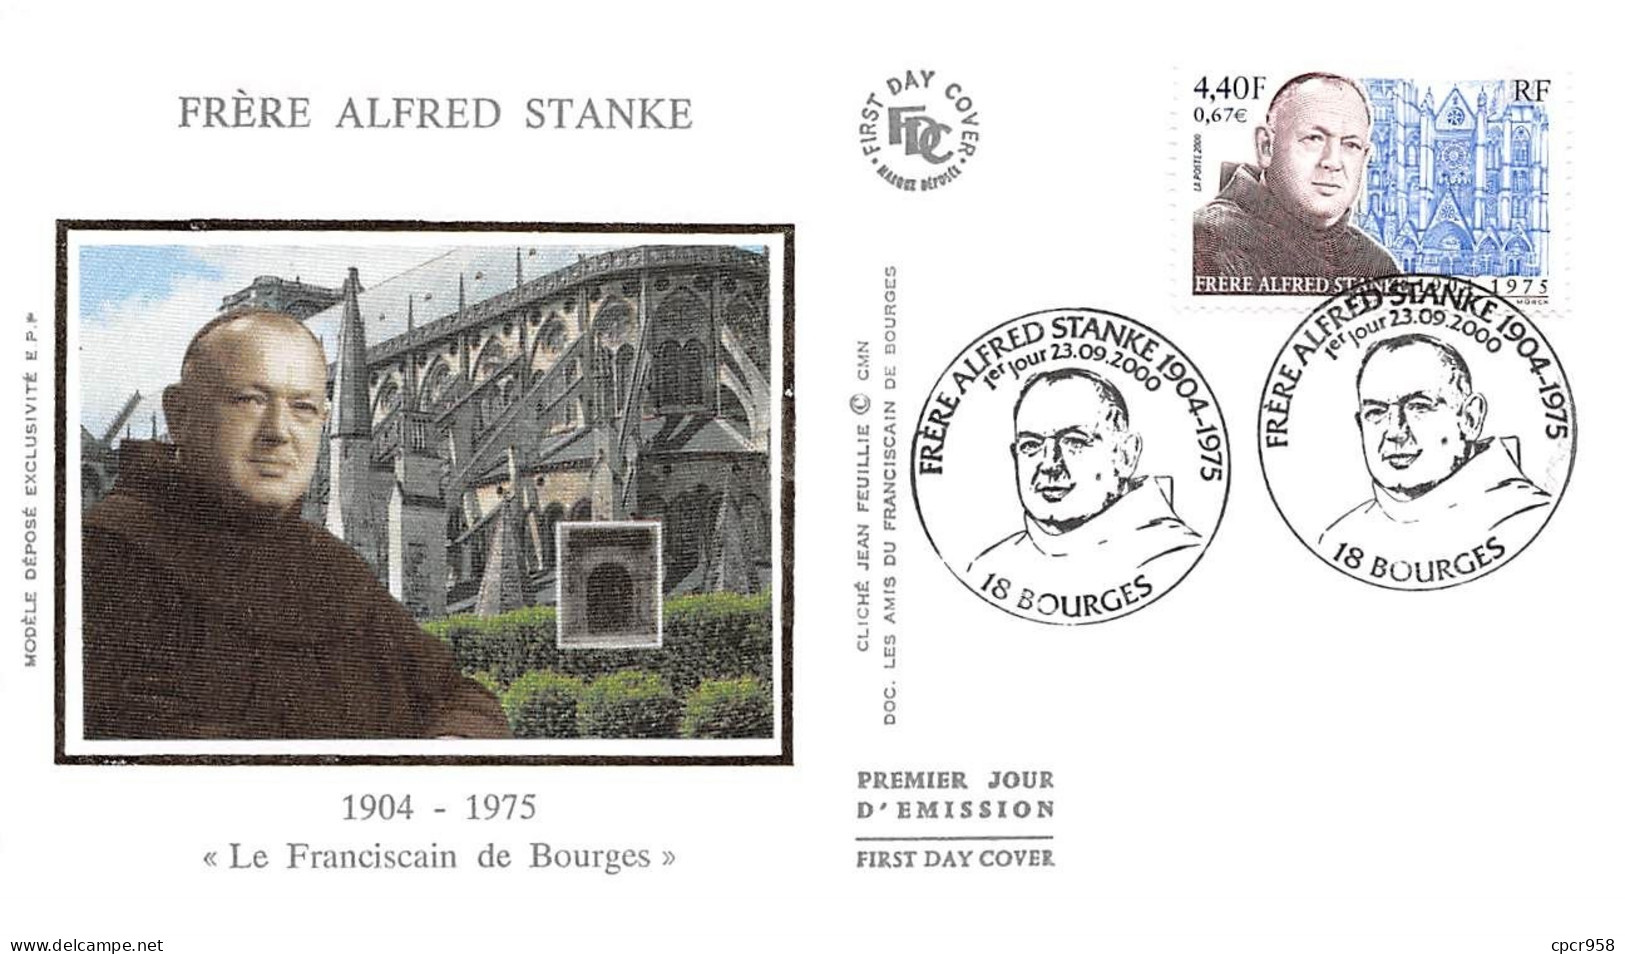 FRANCE.FDC.AM11955.23/09/2000.Cachet Bourges.Frère Alfred Stanke."Le Franciscain De Bourges".1904-1975 - 2000-2009